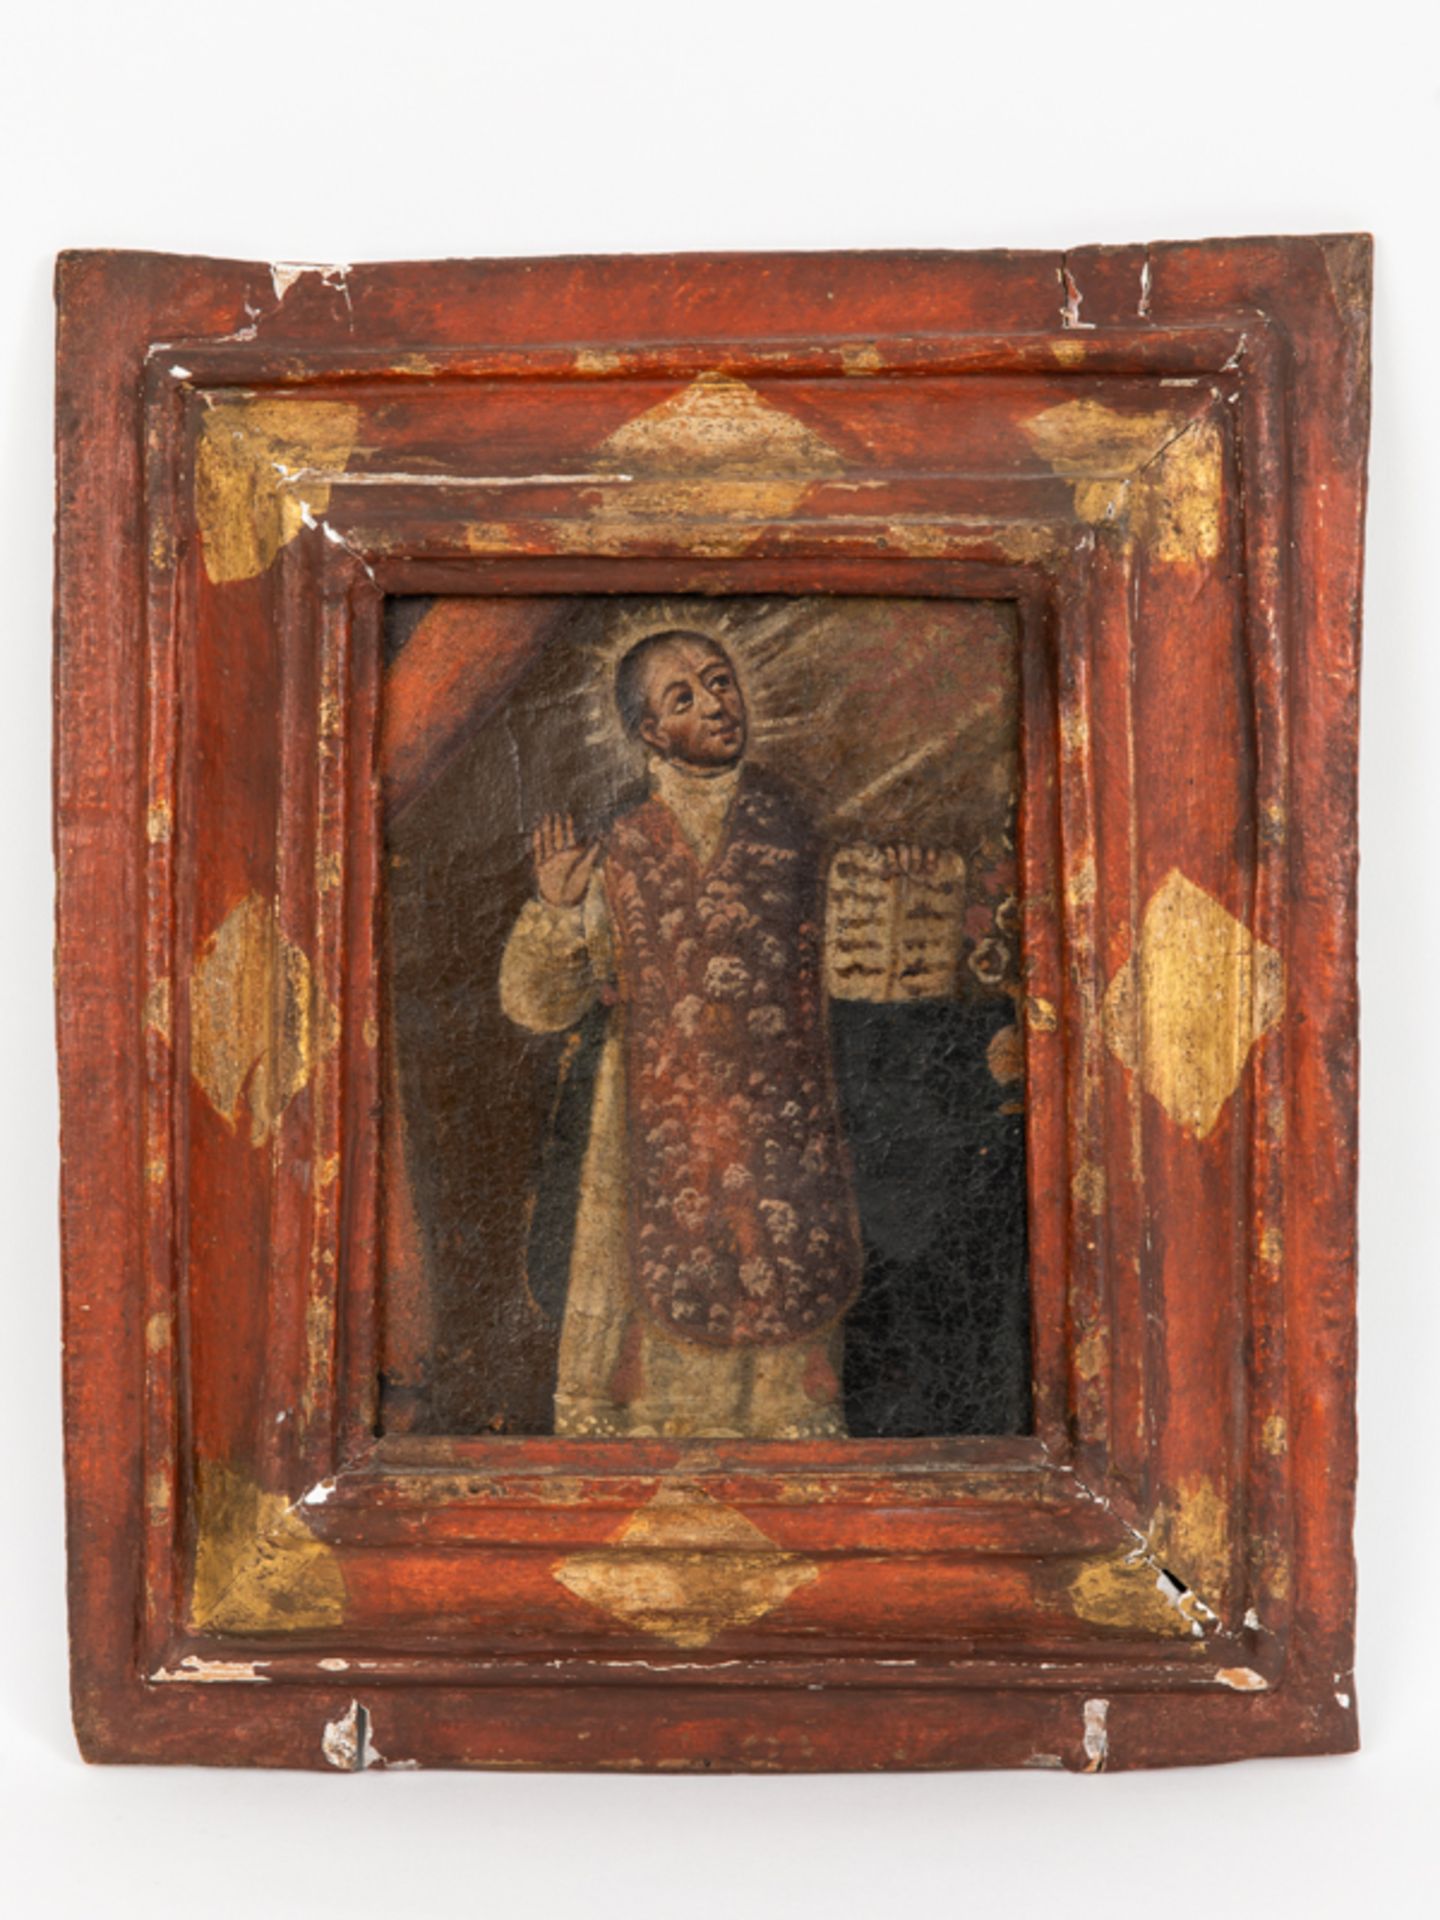 Maler des 17./18. Jhdts., wohl Spanien/Italien. brÃ–l auf Leinwand; Bildnis des heiligen Ignatius